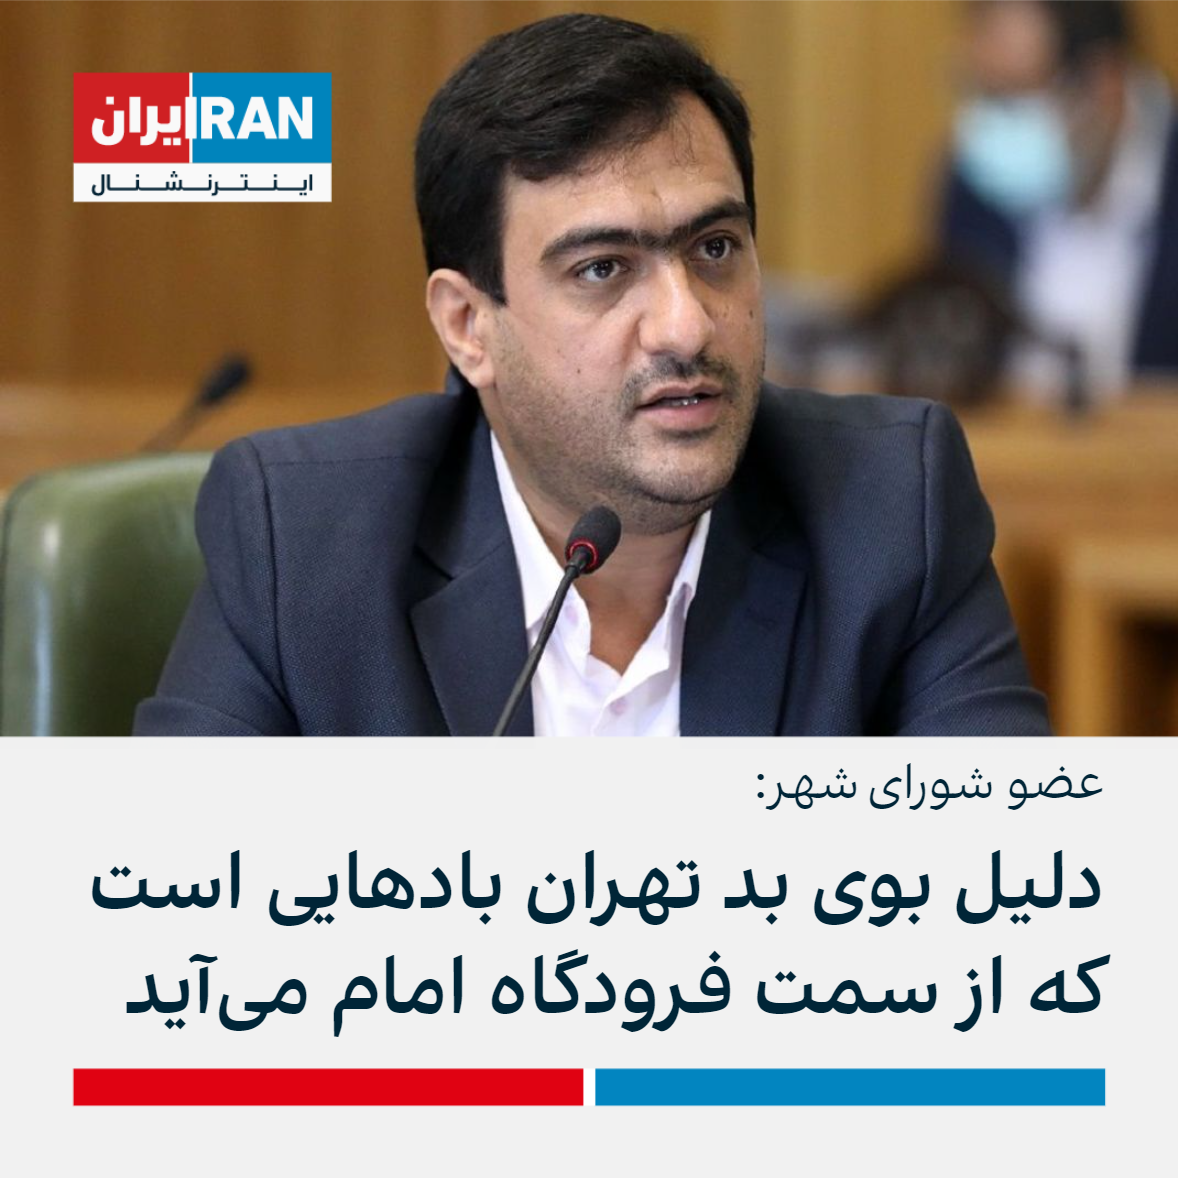 مهدی بابایی، عضو شورای شهر تهران شهردای تهران مسئولیتی در قبال بوی بد 